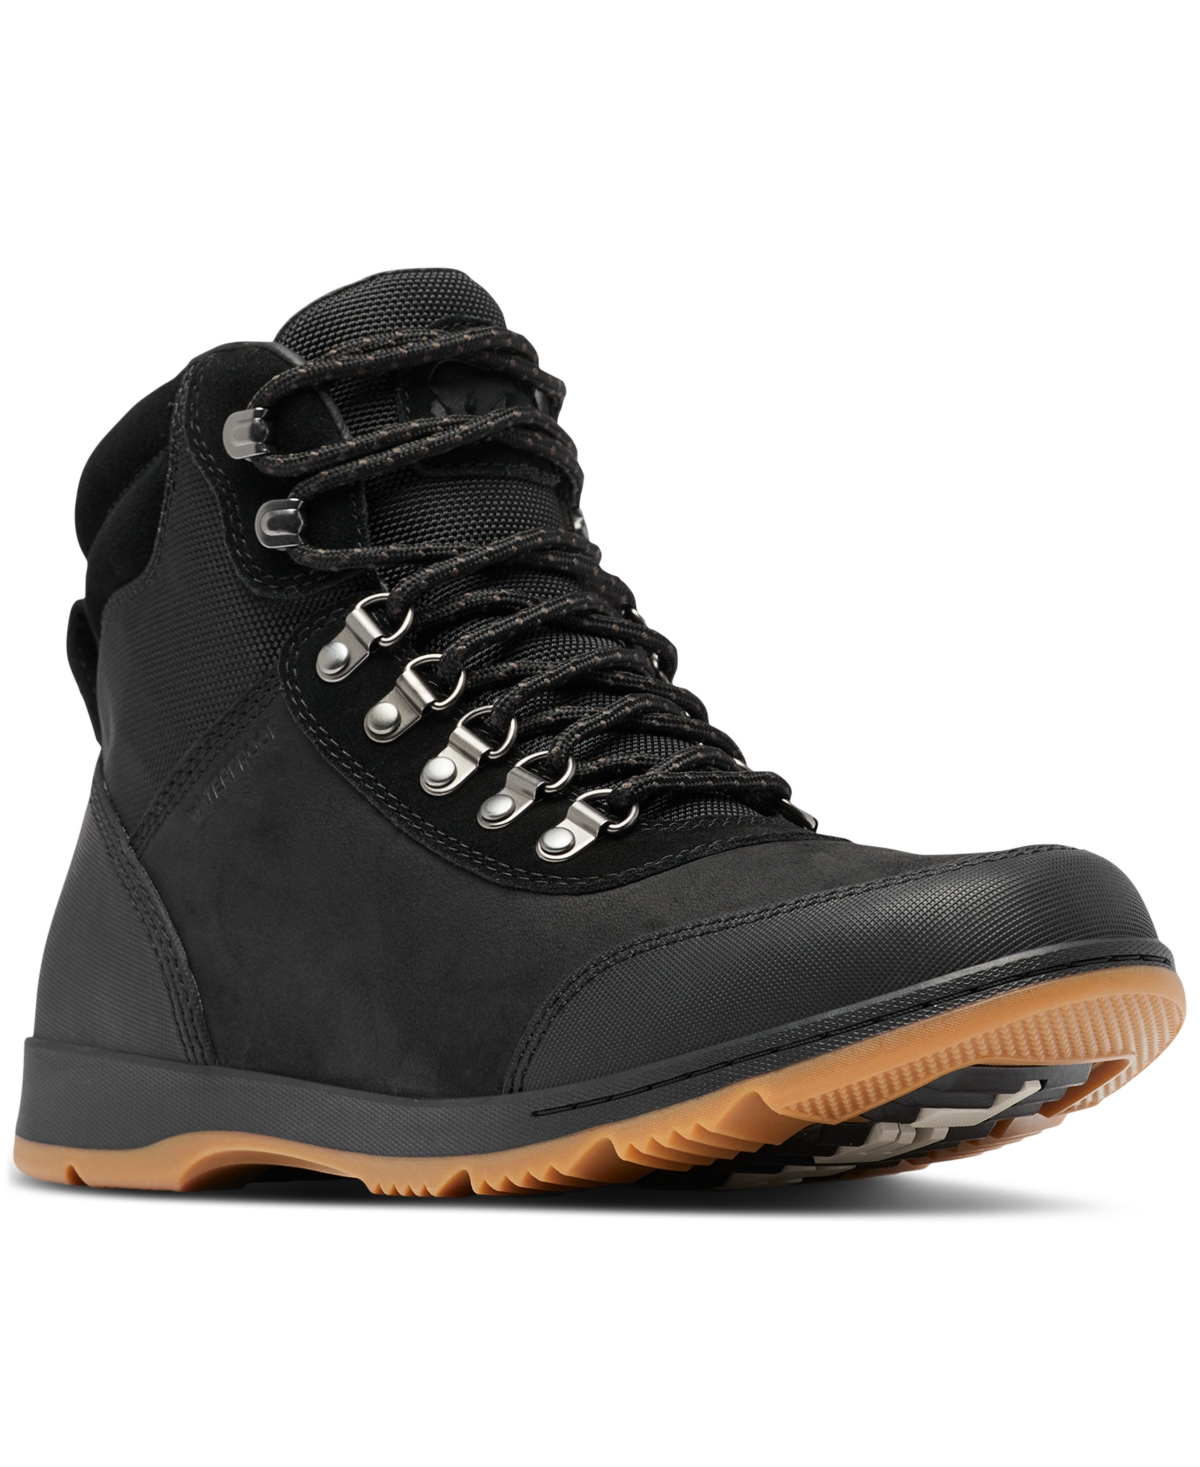 Men's Ankeny Ii Hiker Weatherproof Boots - Black, Gum